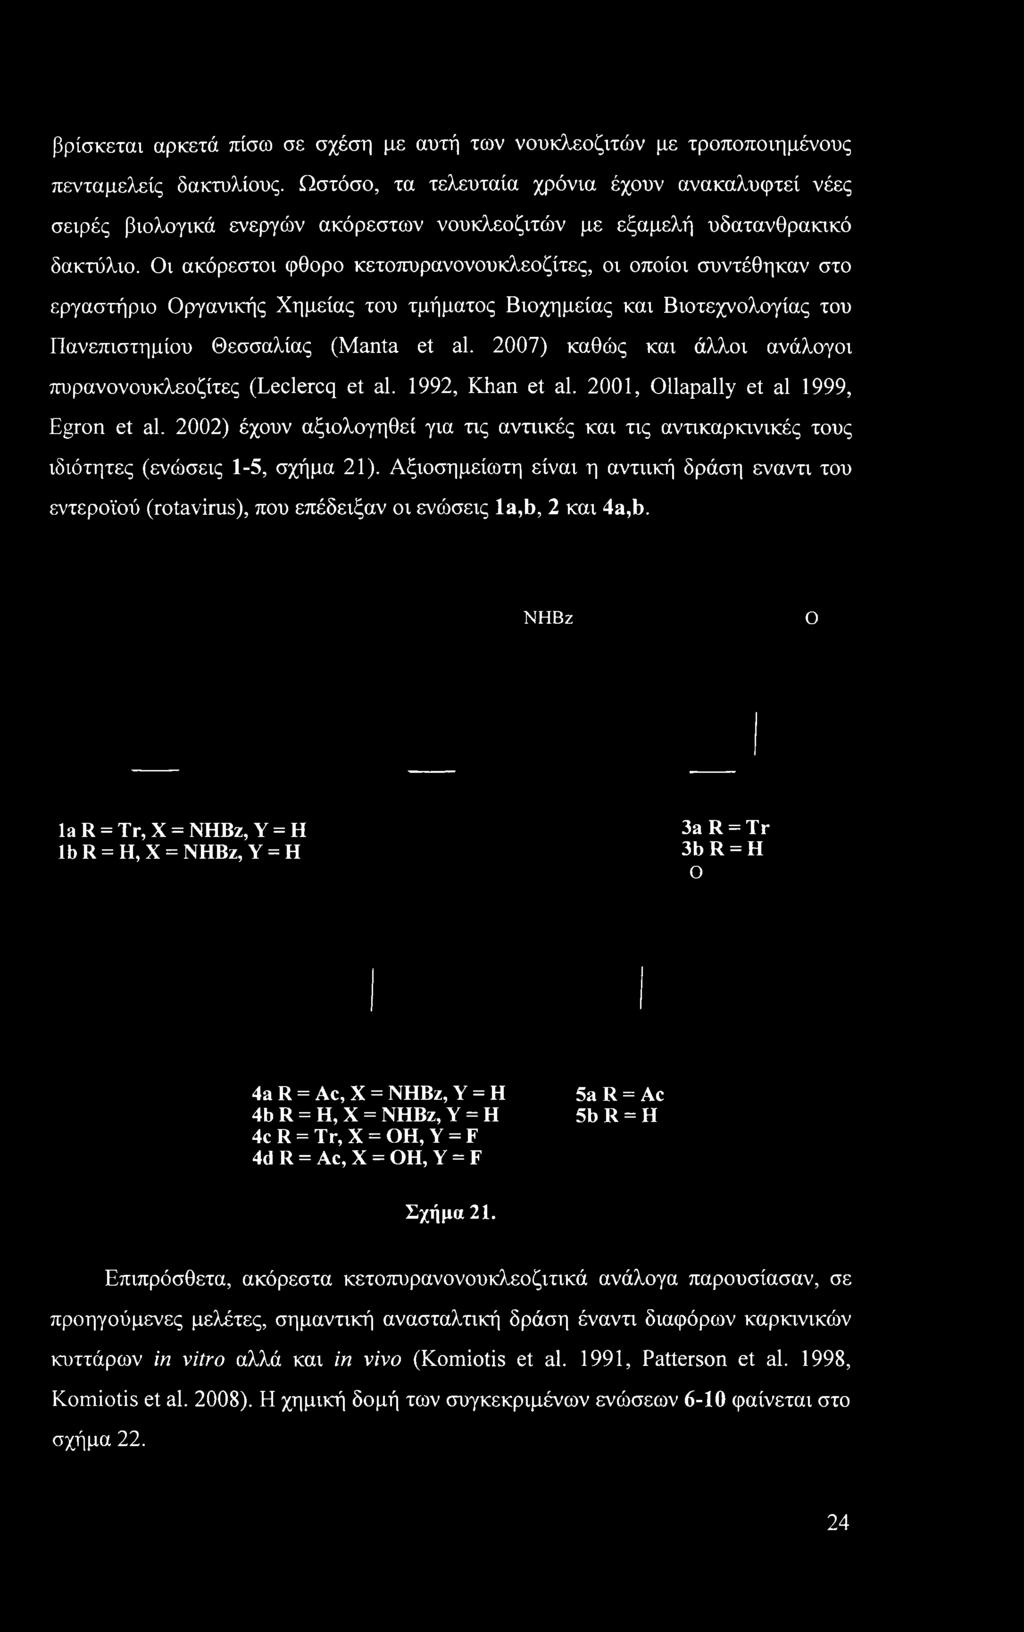 Οι ακόρεστοι φθορο κετοπυρανονουκλεοζίτες, οι οποίοι συντέθηκαν στο εργαστήριο Οργανικής Χημείας του τμήματος Βιοχημείας και Βιοτεχνολογίας του Πανεπιστημίου Θεσσαλίας (Manta et al.